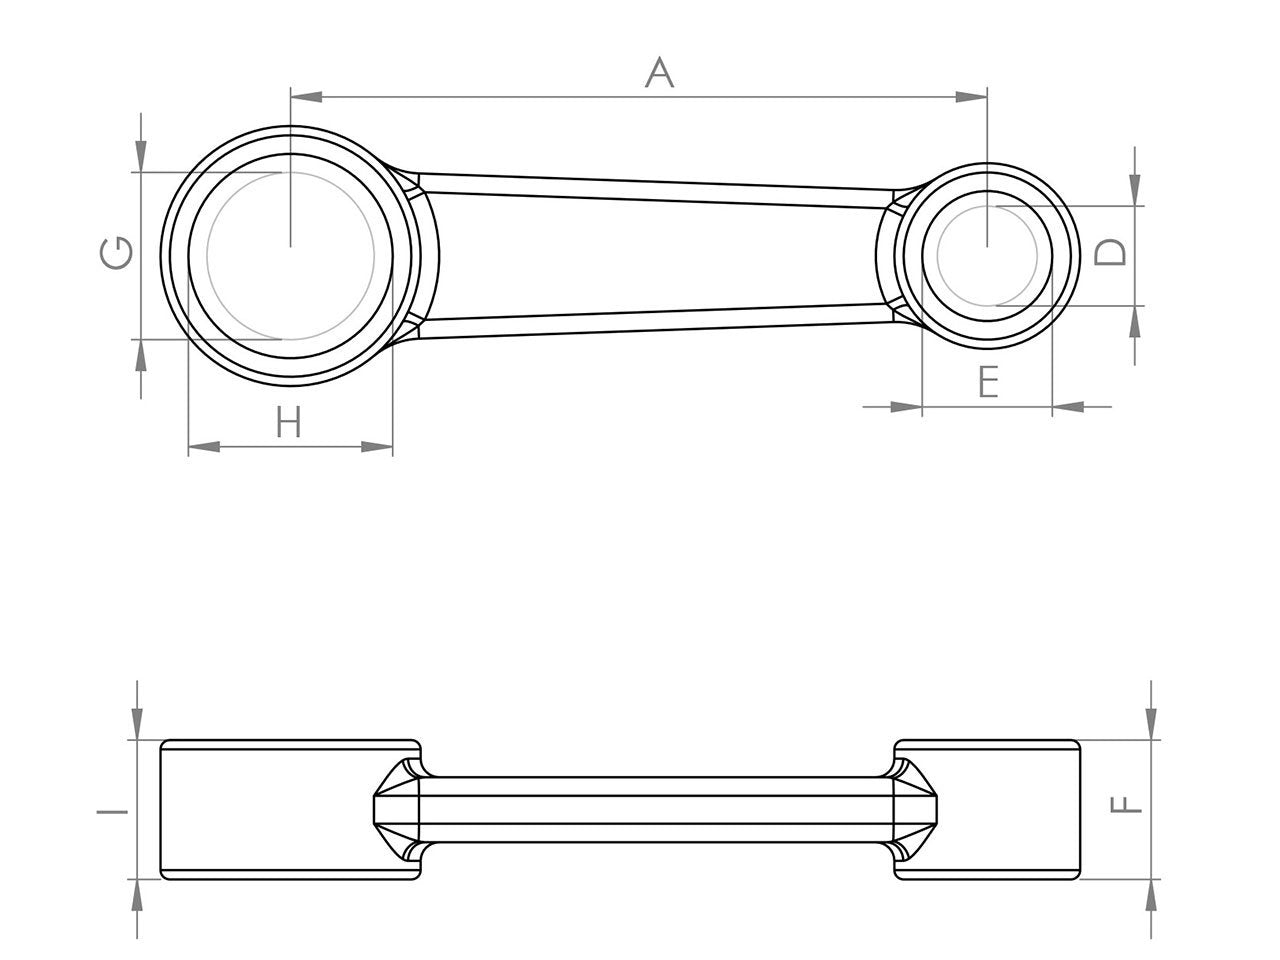 Zeichnung Barikit Pleuel für einen Rieju Minarelli Moped Motor mit Bemaßung.